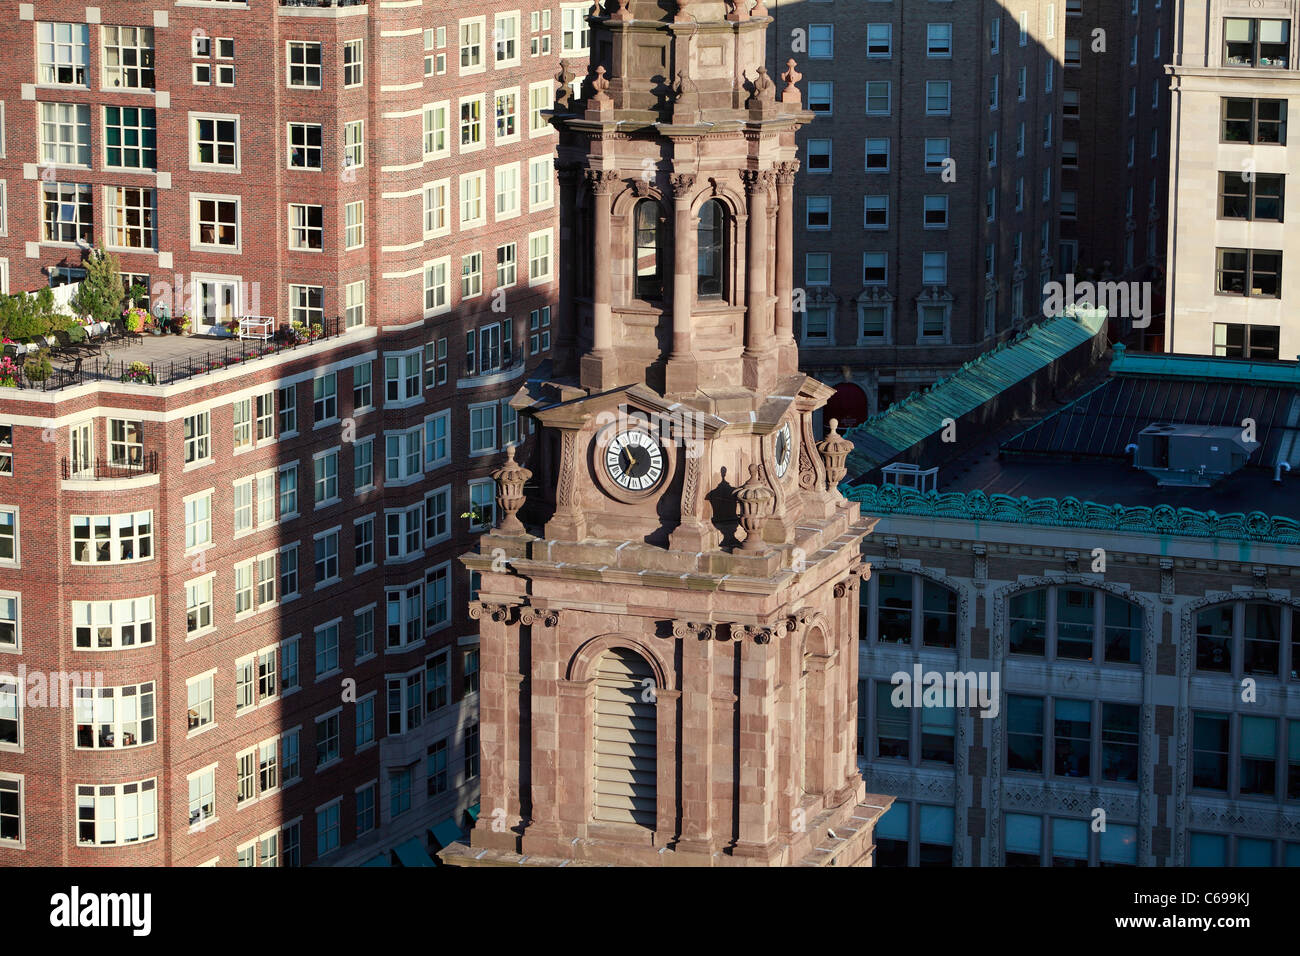 Arlington Street Church steeple, Boston, Massachusetts Stock Photo